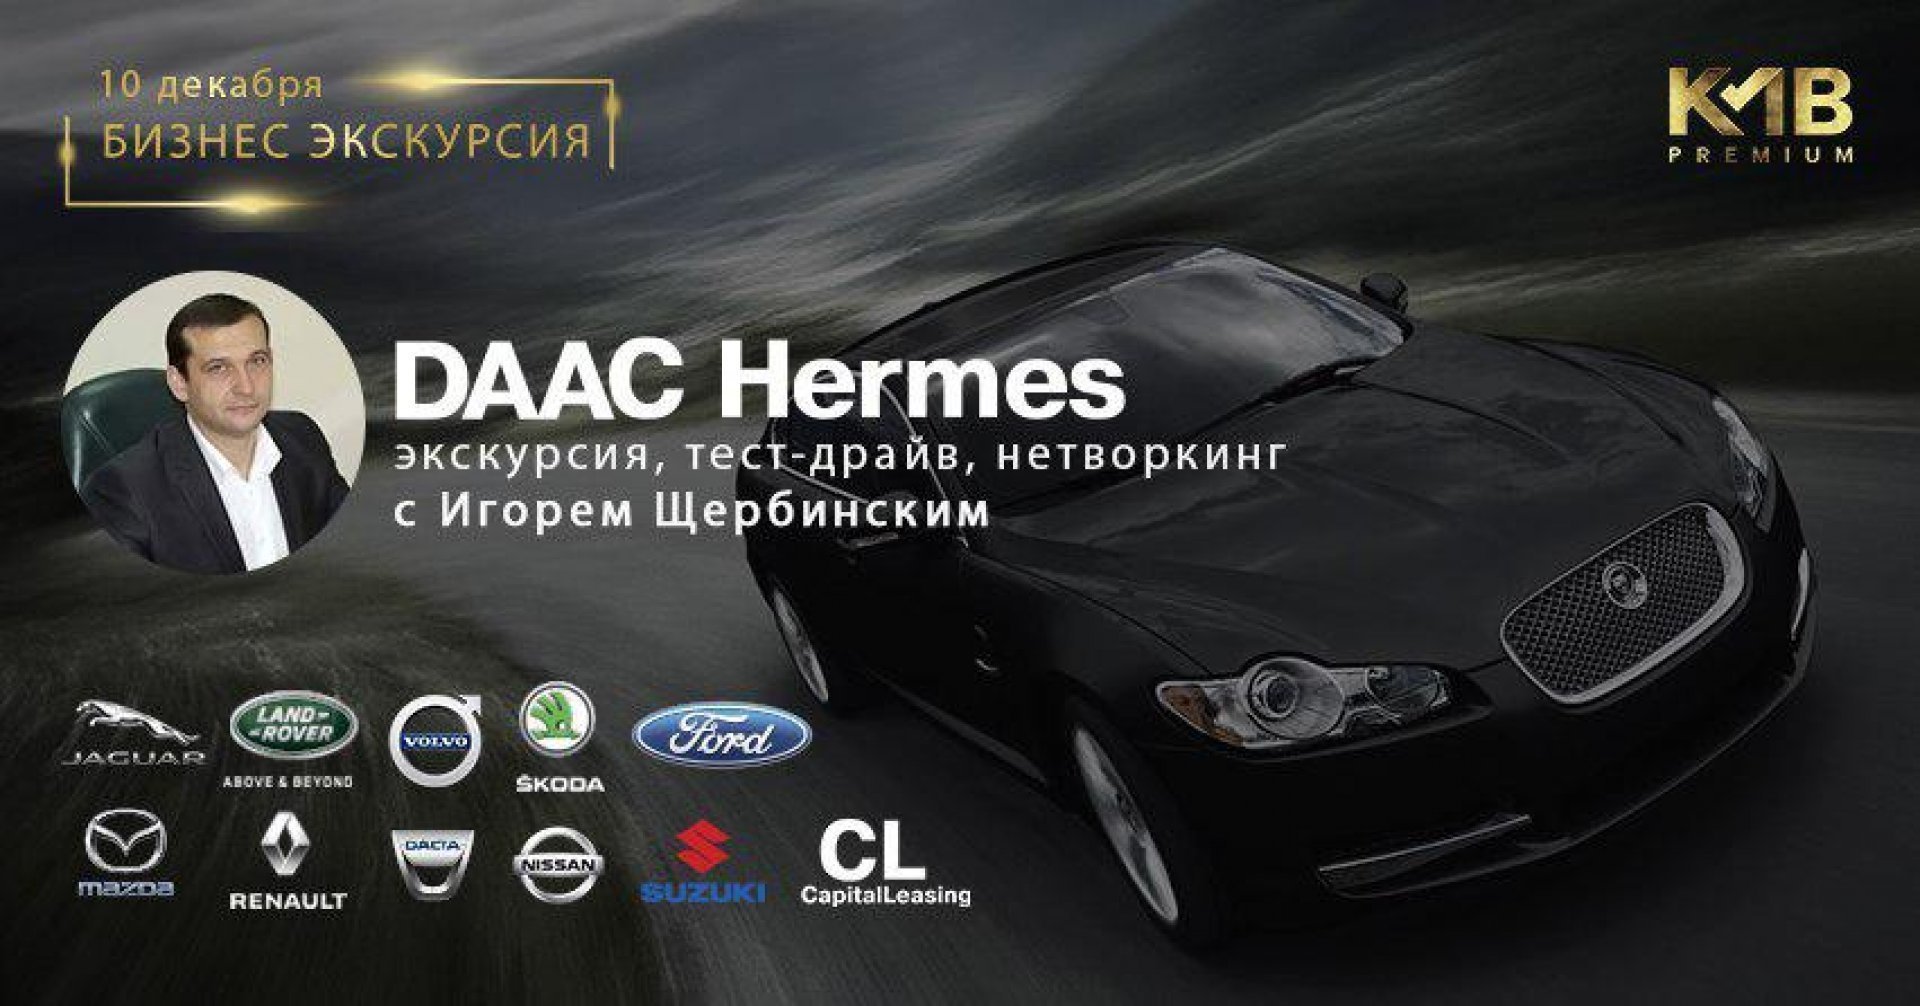 Бизнес-экскурсия в DAAC-Hermes c Игорем Щербинским | KMB Premium